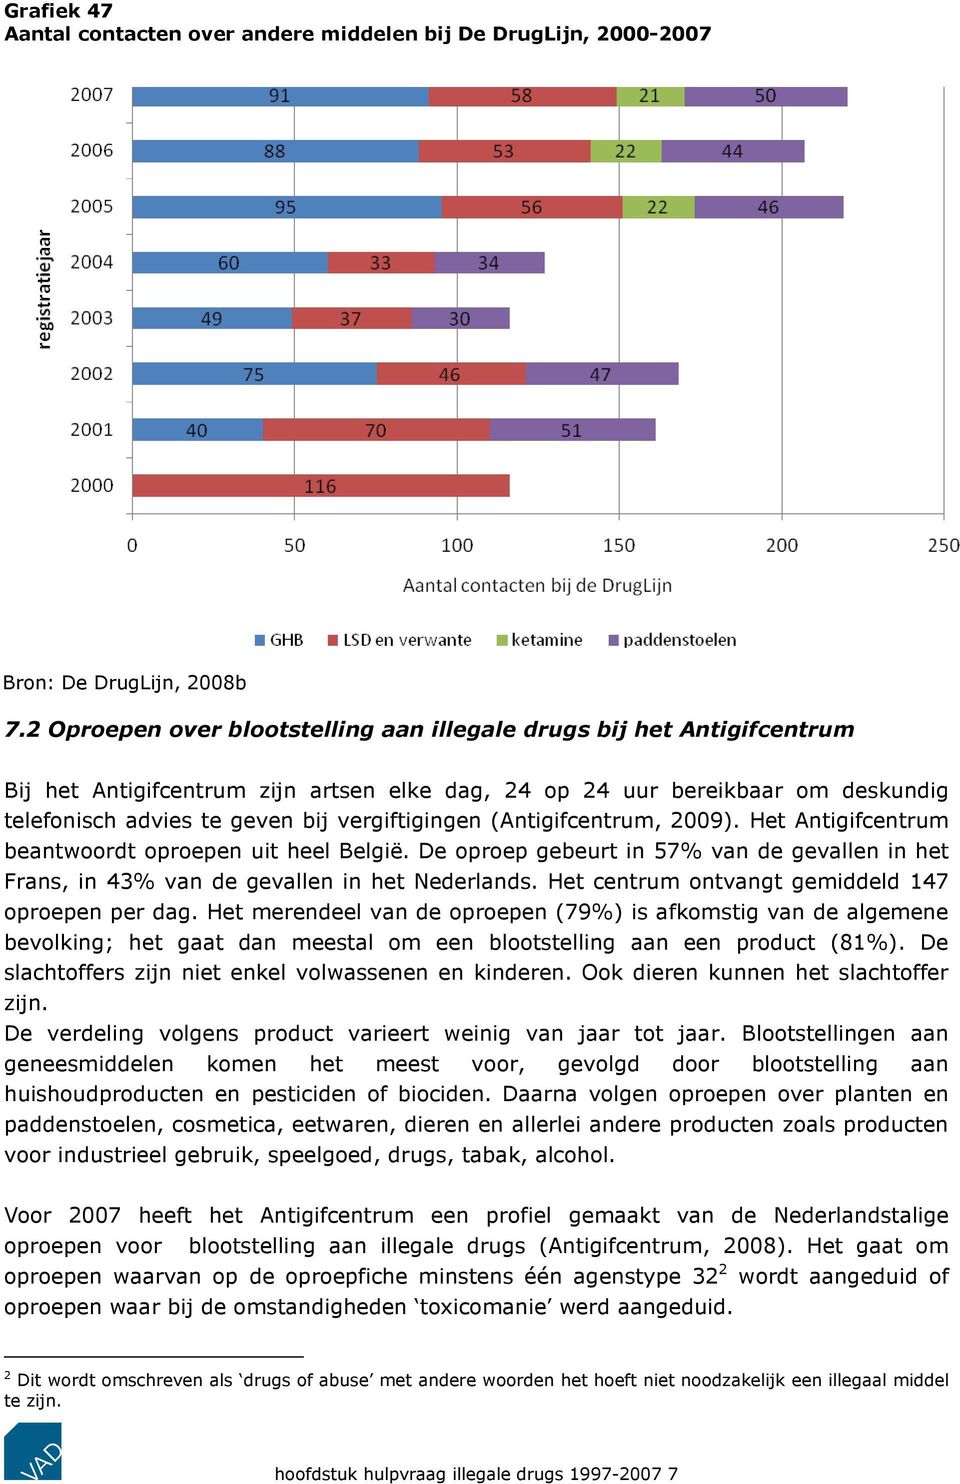 vergiftigingen (Antigifcentrum, 2009). Het Antigifcentrum beantwoordt oproepen uit heel België. De oproep gebeurt in 57% van de gevallen in het Frans, in 43% van de gevallen in het Nederlands.